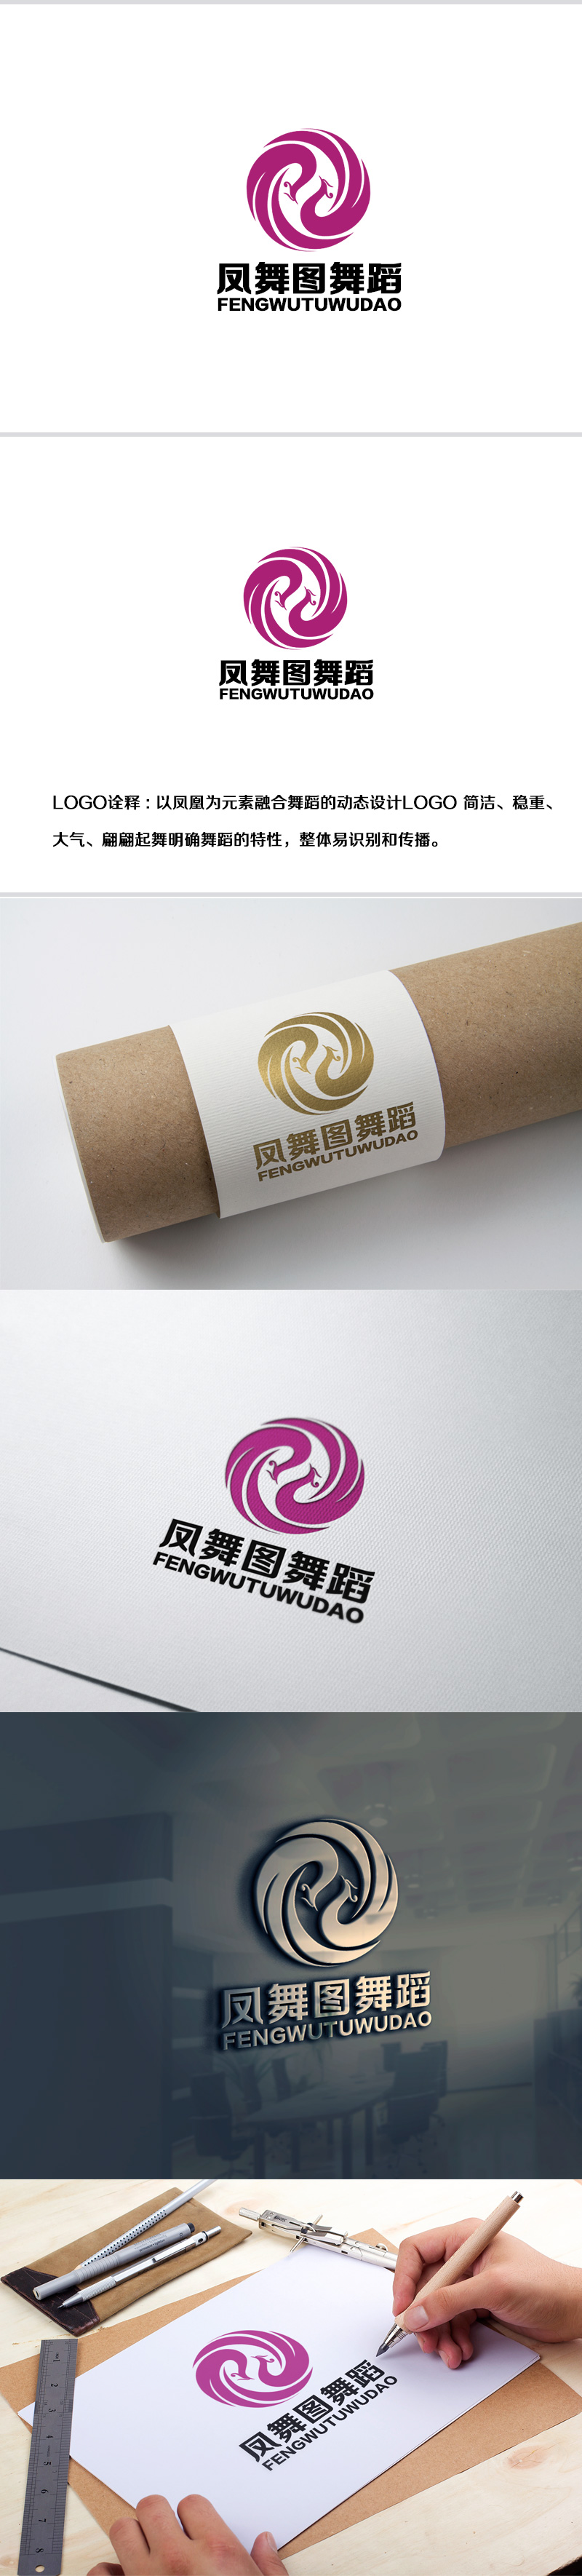 余亮亮的深圳市凤舞图舞蹈文化艺术培训有限公司logo设计